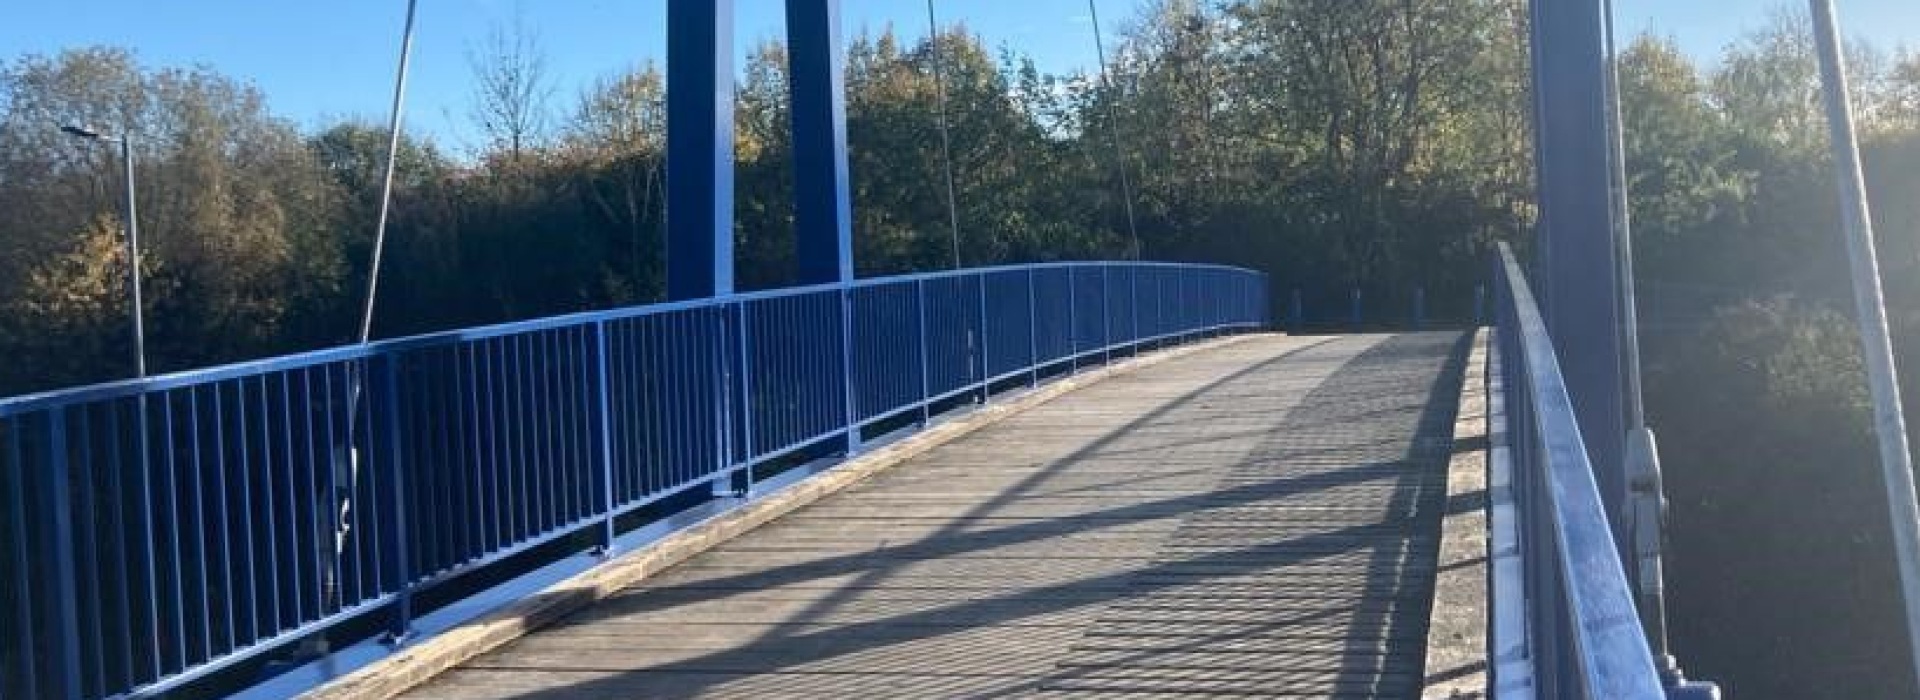 Manvers Footbridge